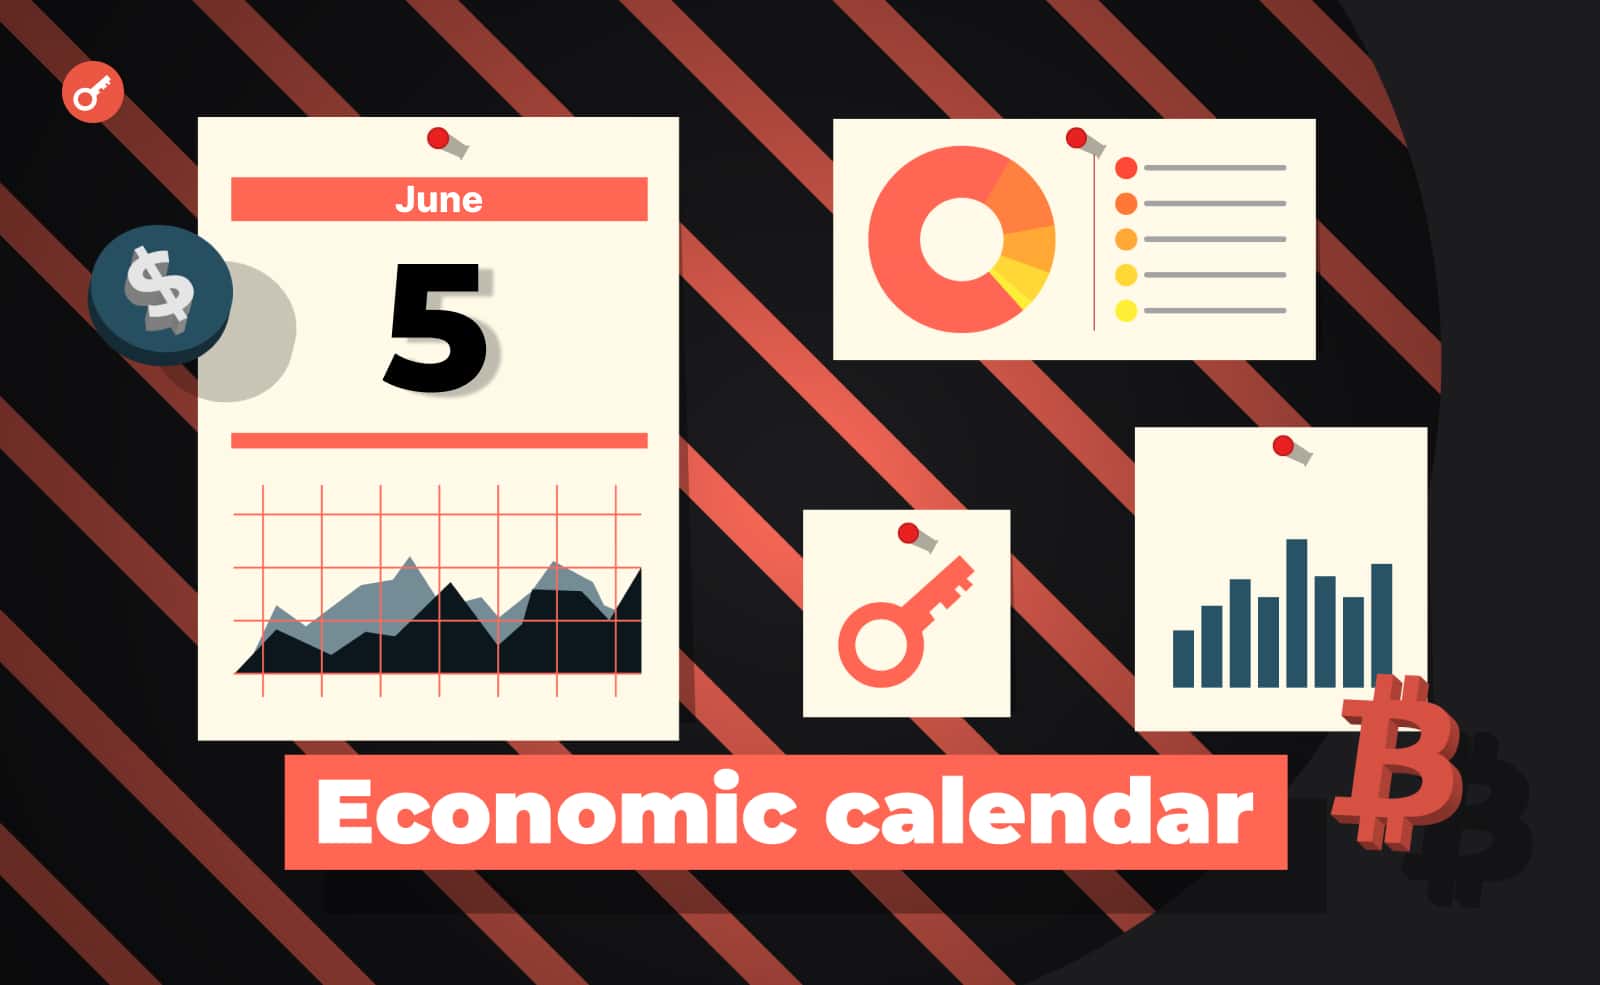 Економічний календар 5-9 червня: торговий баланс США, новини від Ripple та інфляція в Китаї. Головний колаж новини.